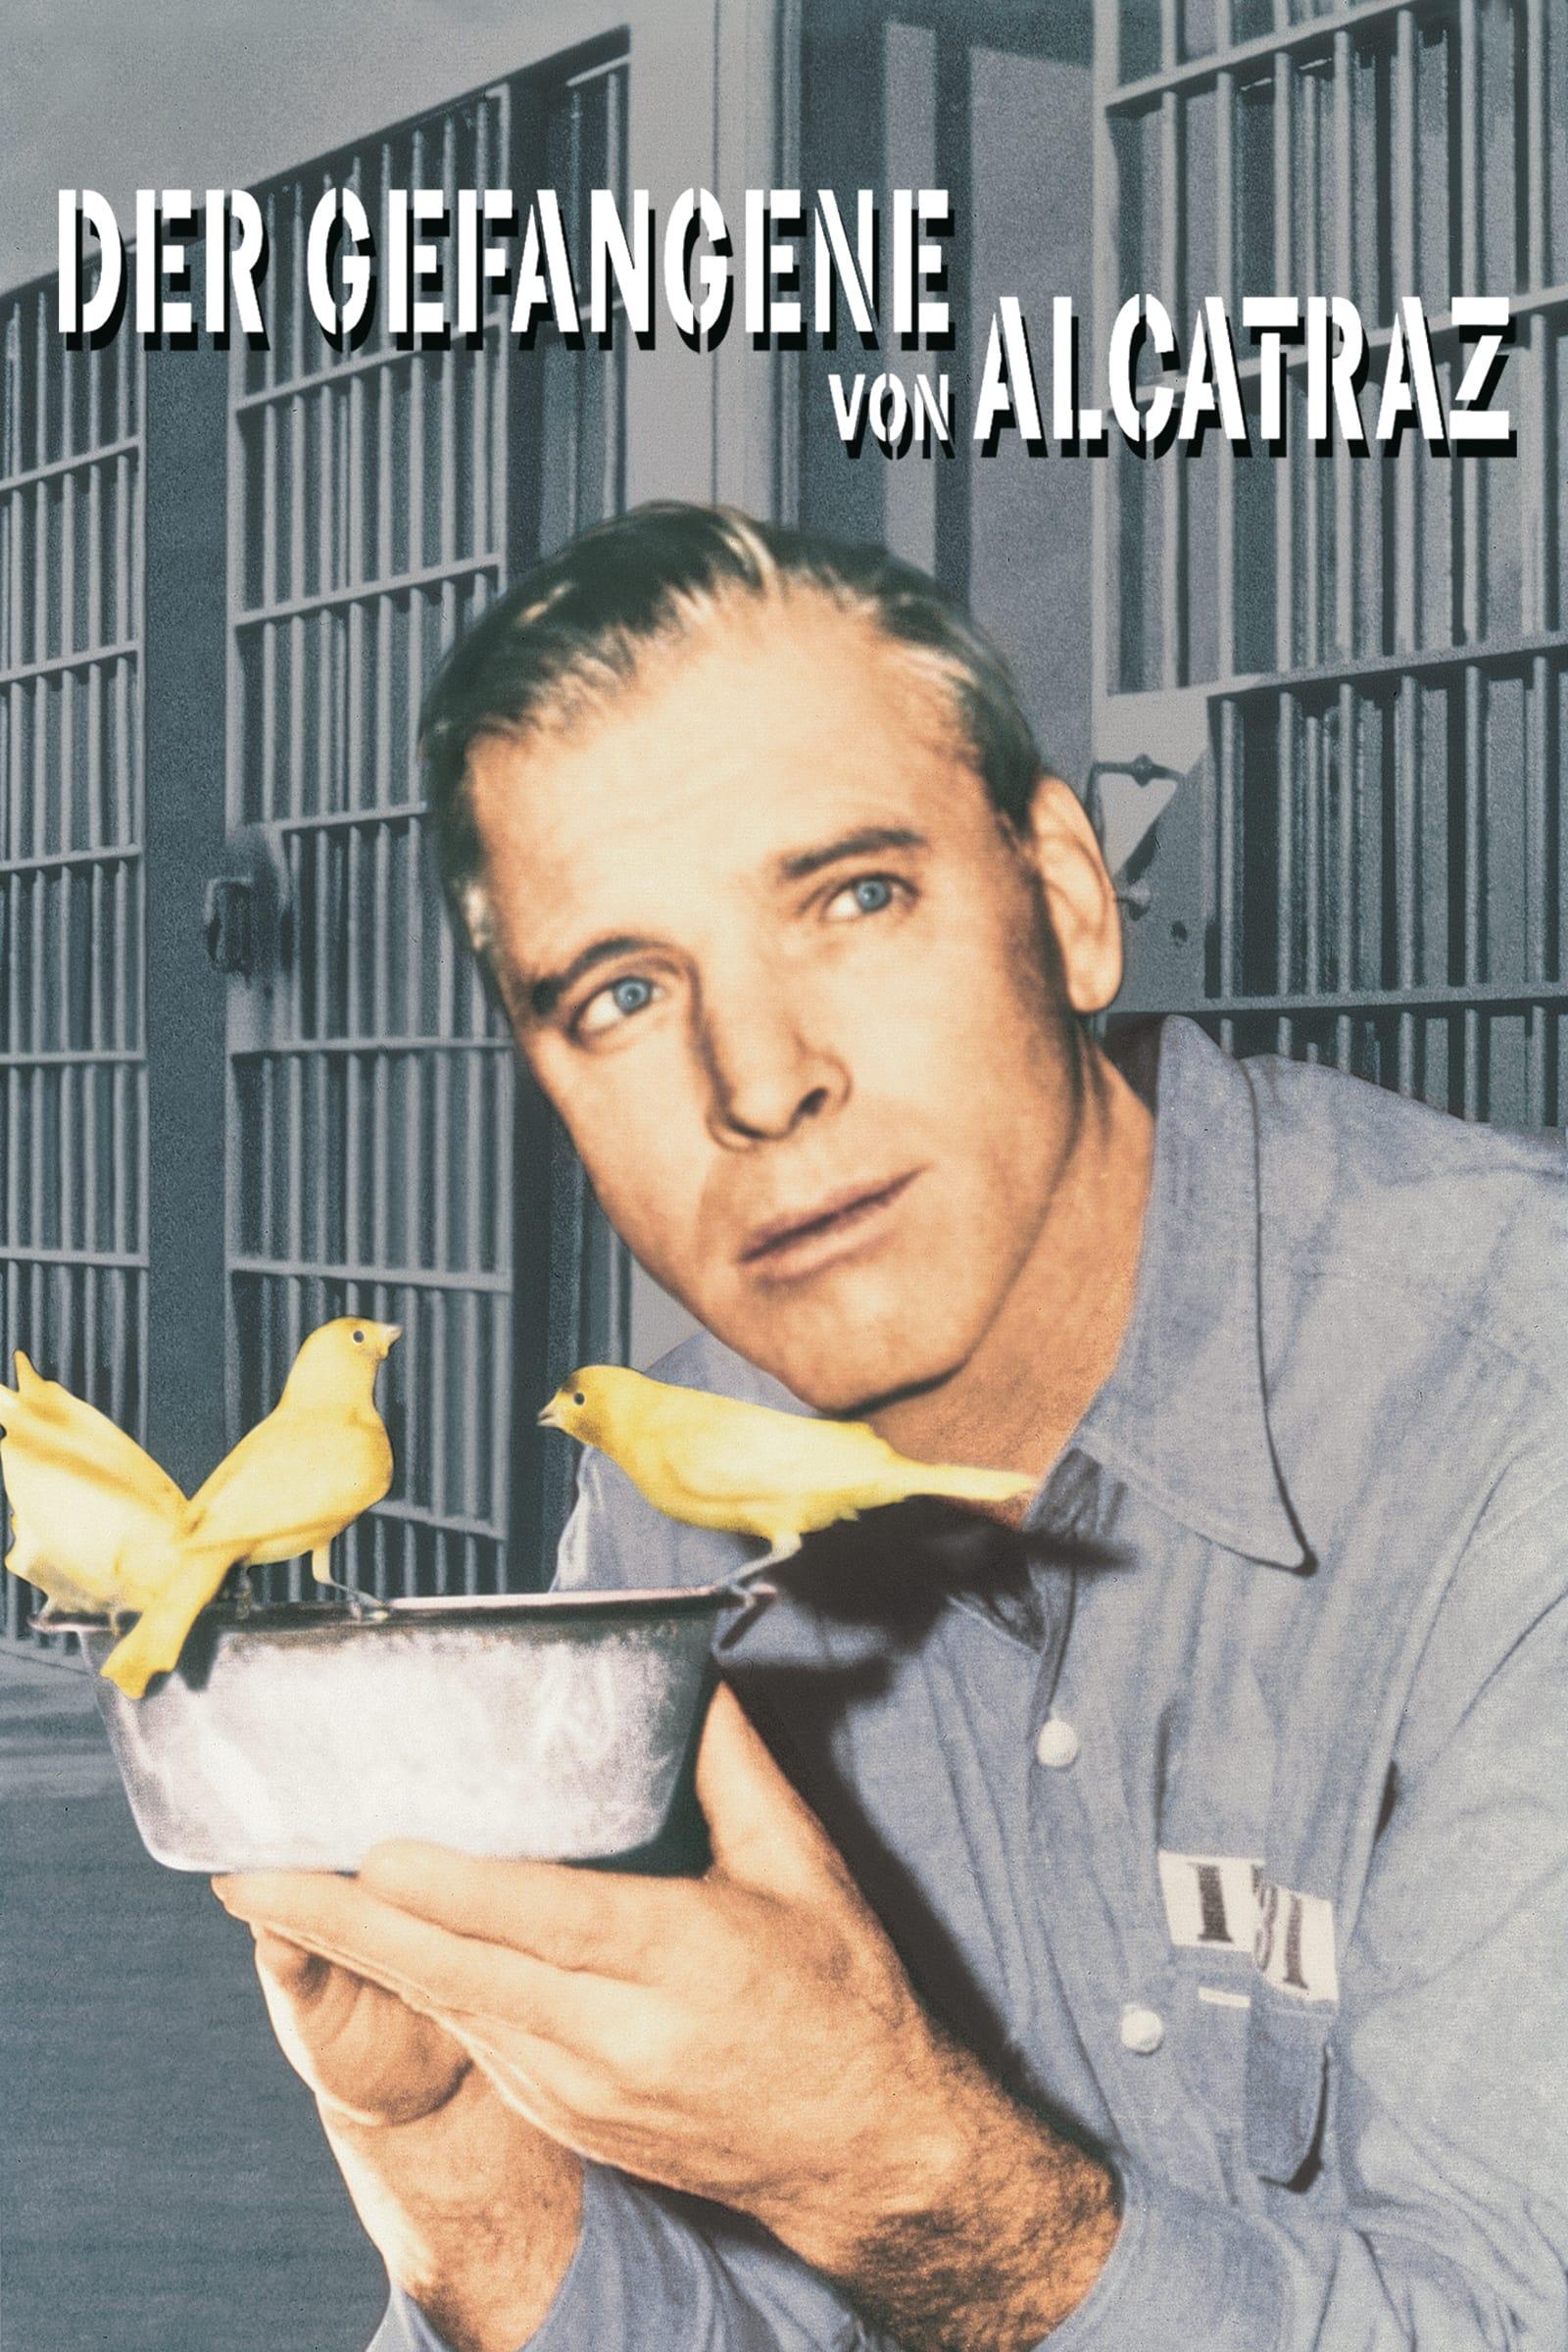 Der Gefangene von Alcatraz poster